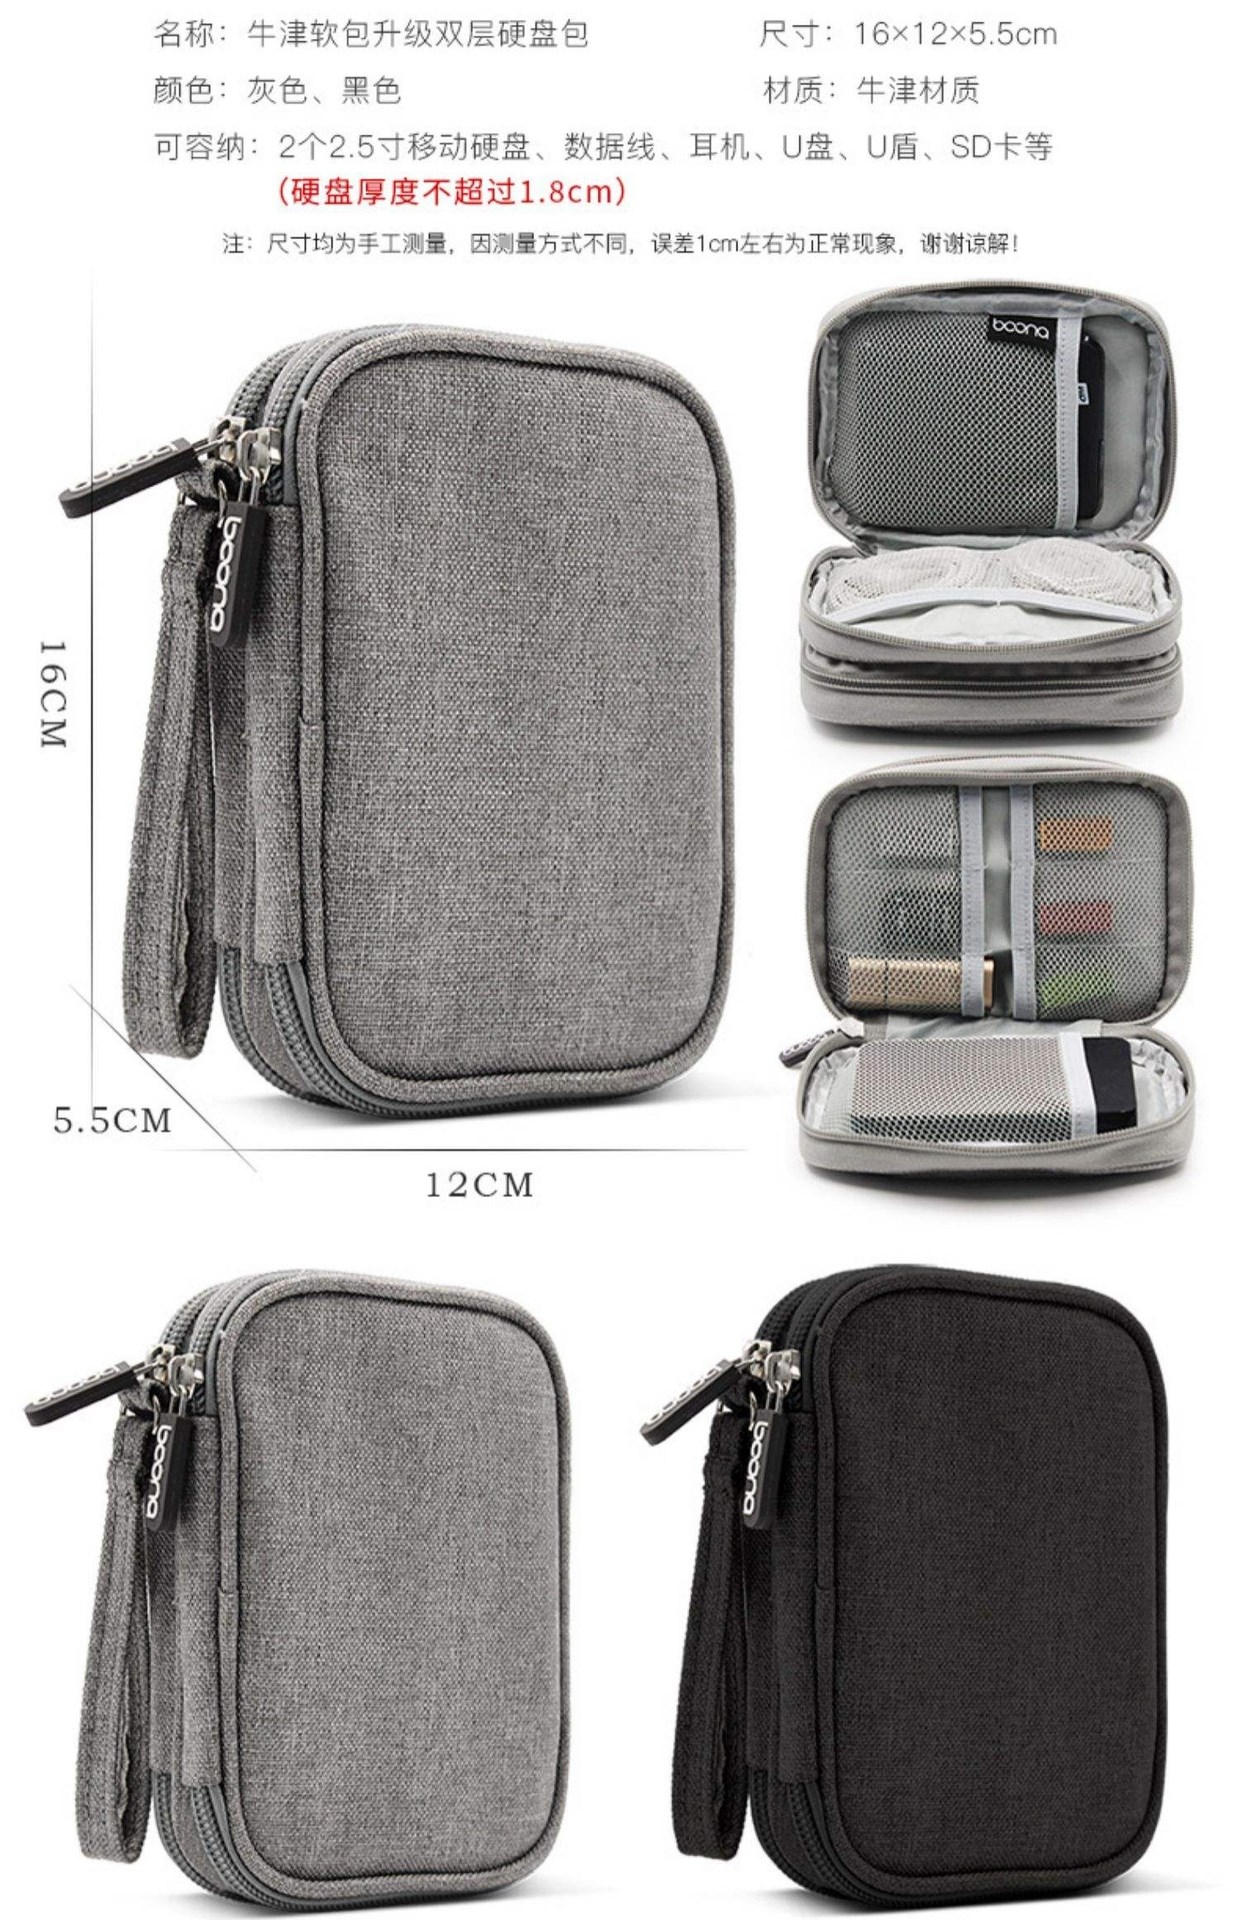 . Túi lưu trữ túi kỹ thuật số nhỏ túi xách tay phụ kiện sáng tạo nhỏ thay đổi hộp lưu trữ hoàn thiện túi ứng dụng gia đình - Lưu trữ cho sản phẩm kỹ thuật số